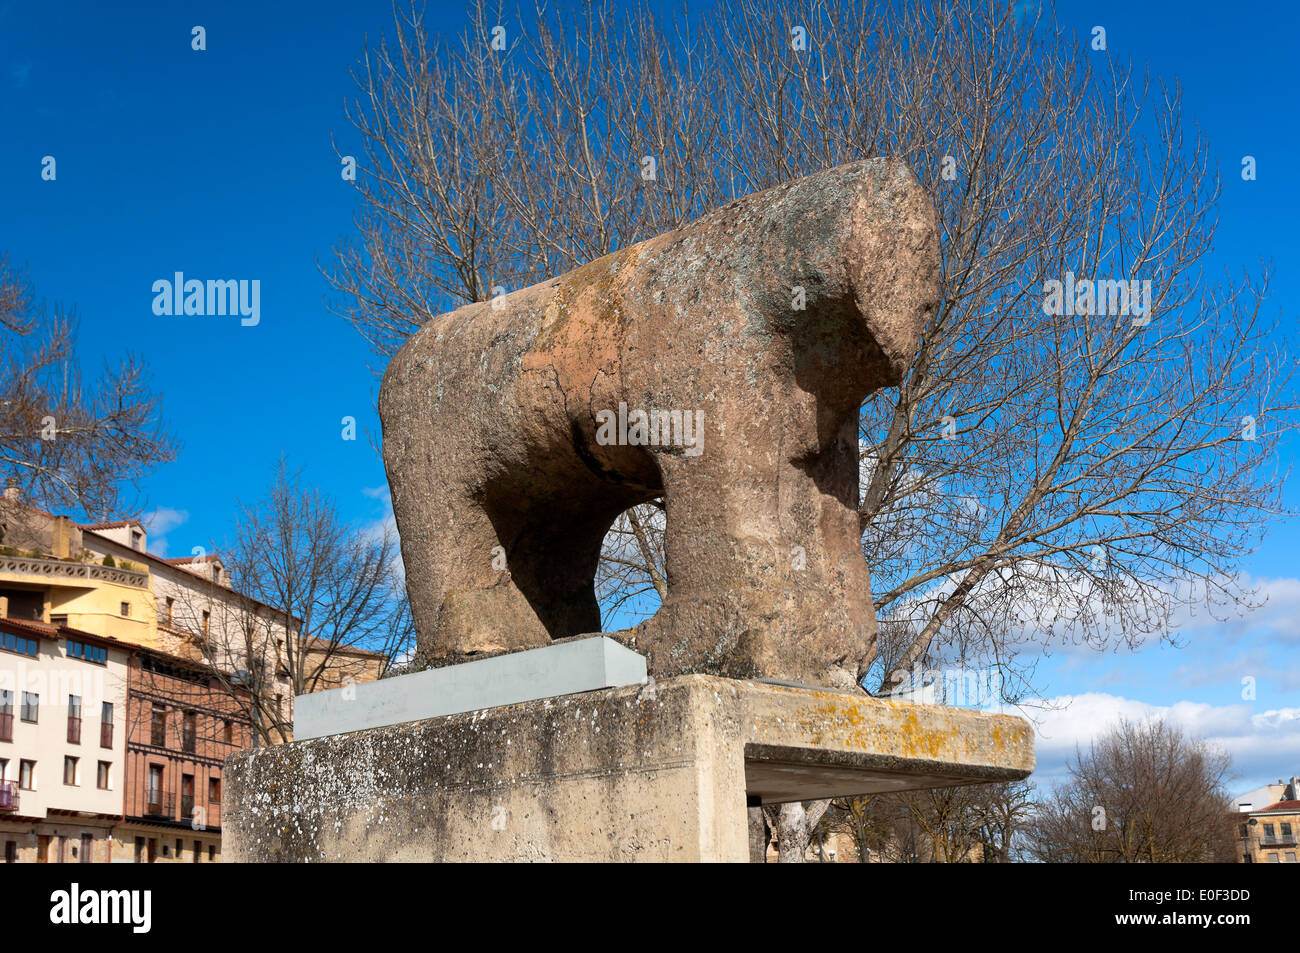 Celtic boar ( mentioned in the picaresque novel El Lazarillo de Tormes ), Salamanca, Region of Castilla y Leon, Spain, Europe Stock Photo